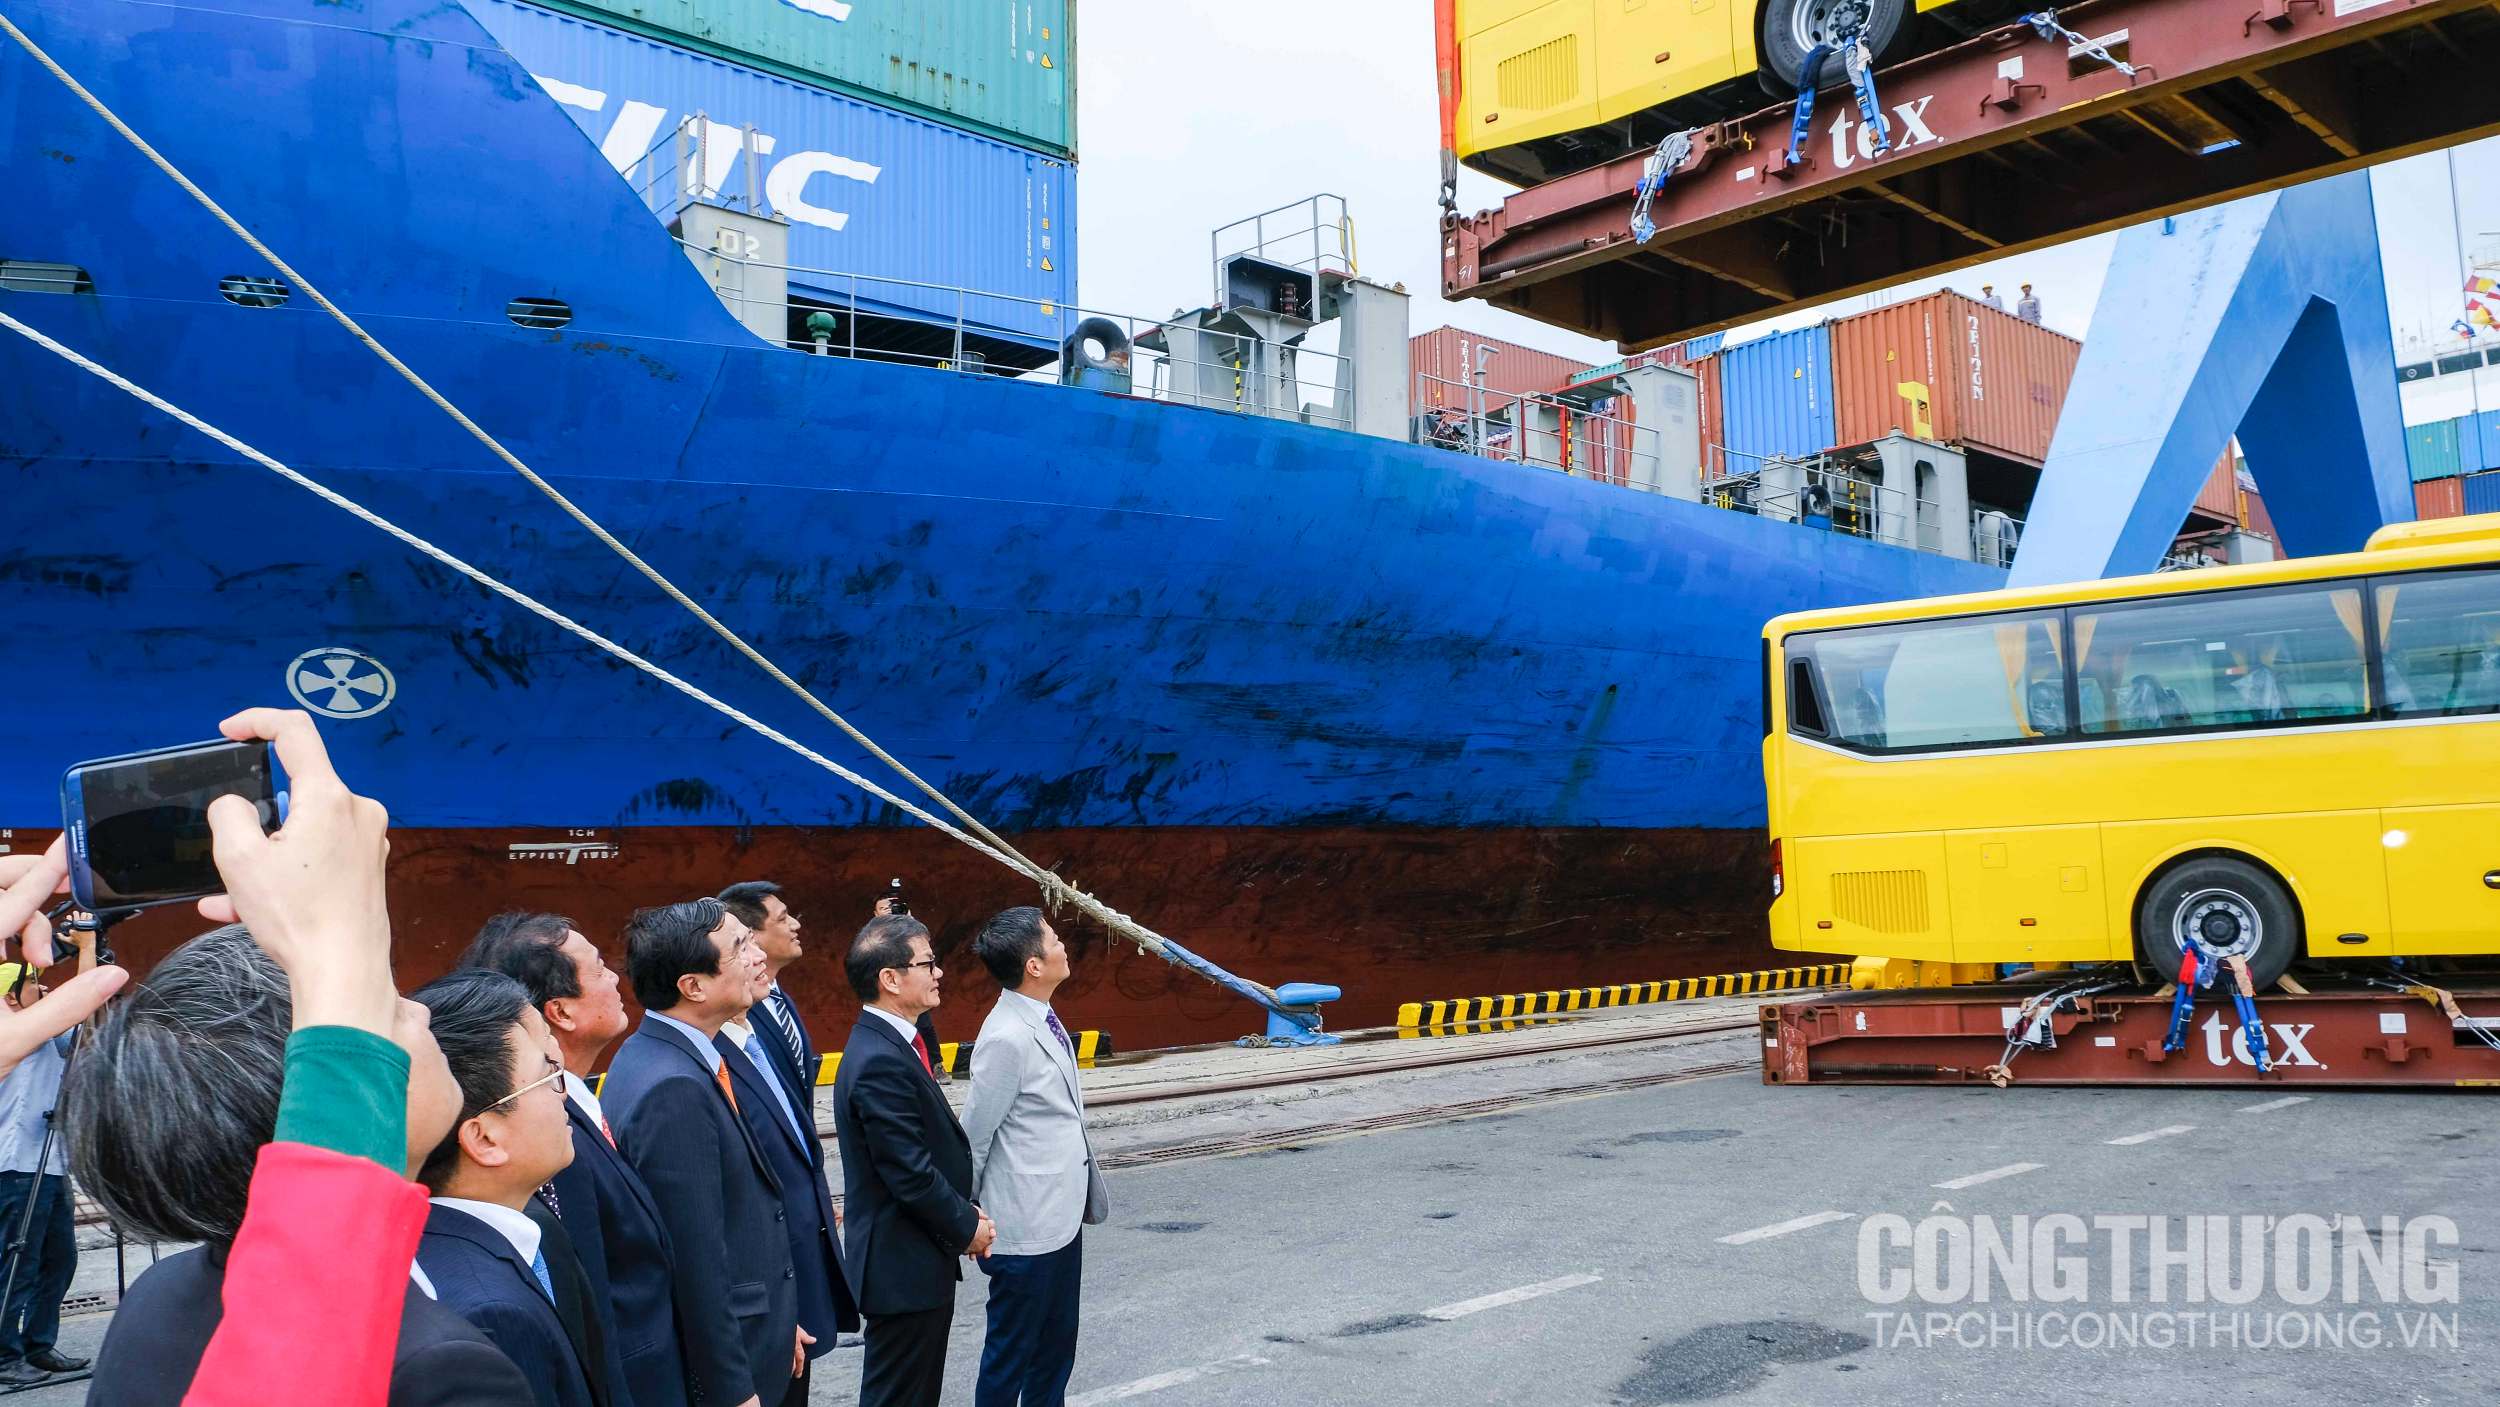 Các đại biểu chứng kiến chiếc xe bus đầu tiên được đưa lên tàu xuất khẩu sang Philippines